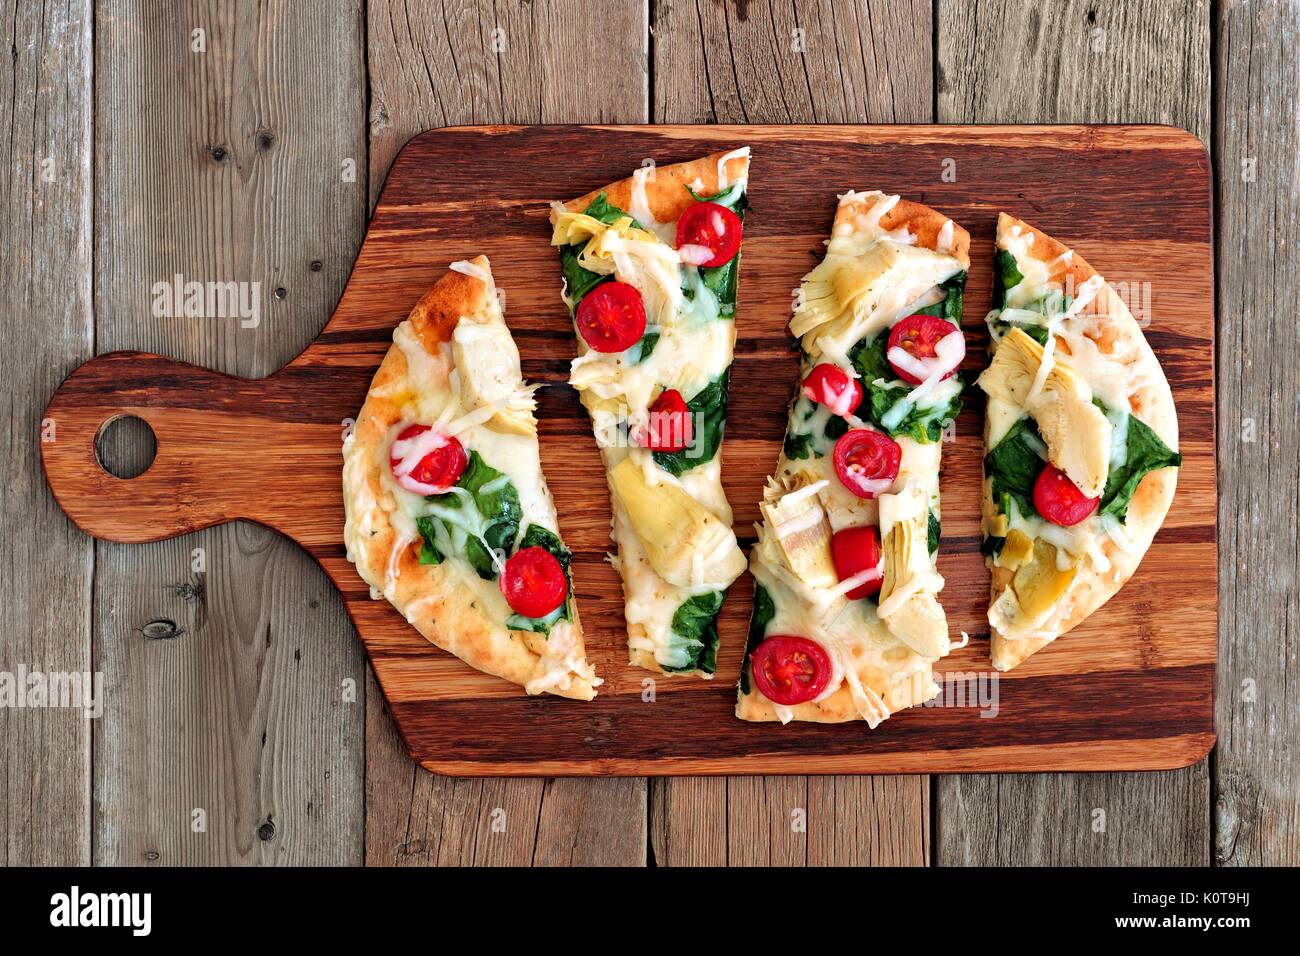 Pain plat sain avec pizza mozzarella fondu, tomates, épinards et artichauts, vue ci-dessus sur paddle board en bois Banque D'Images